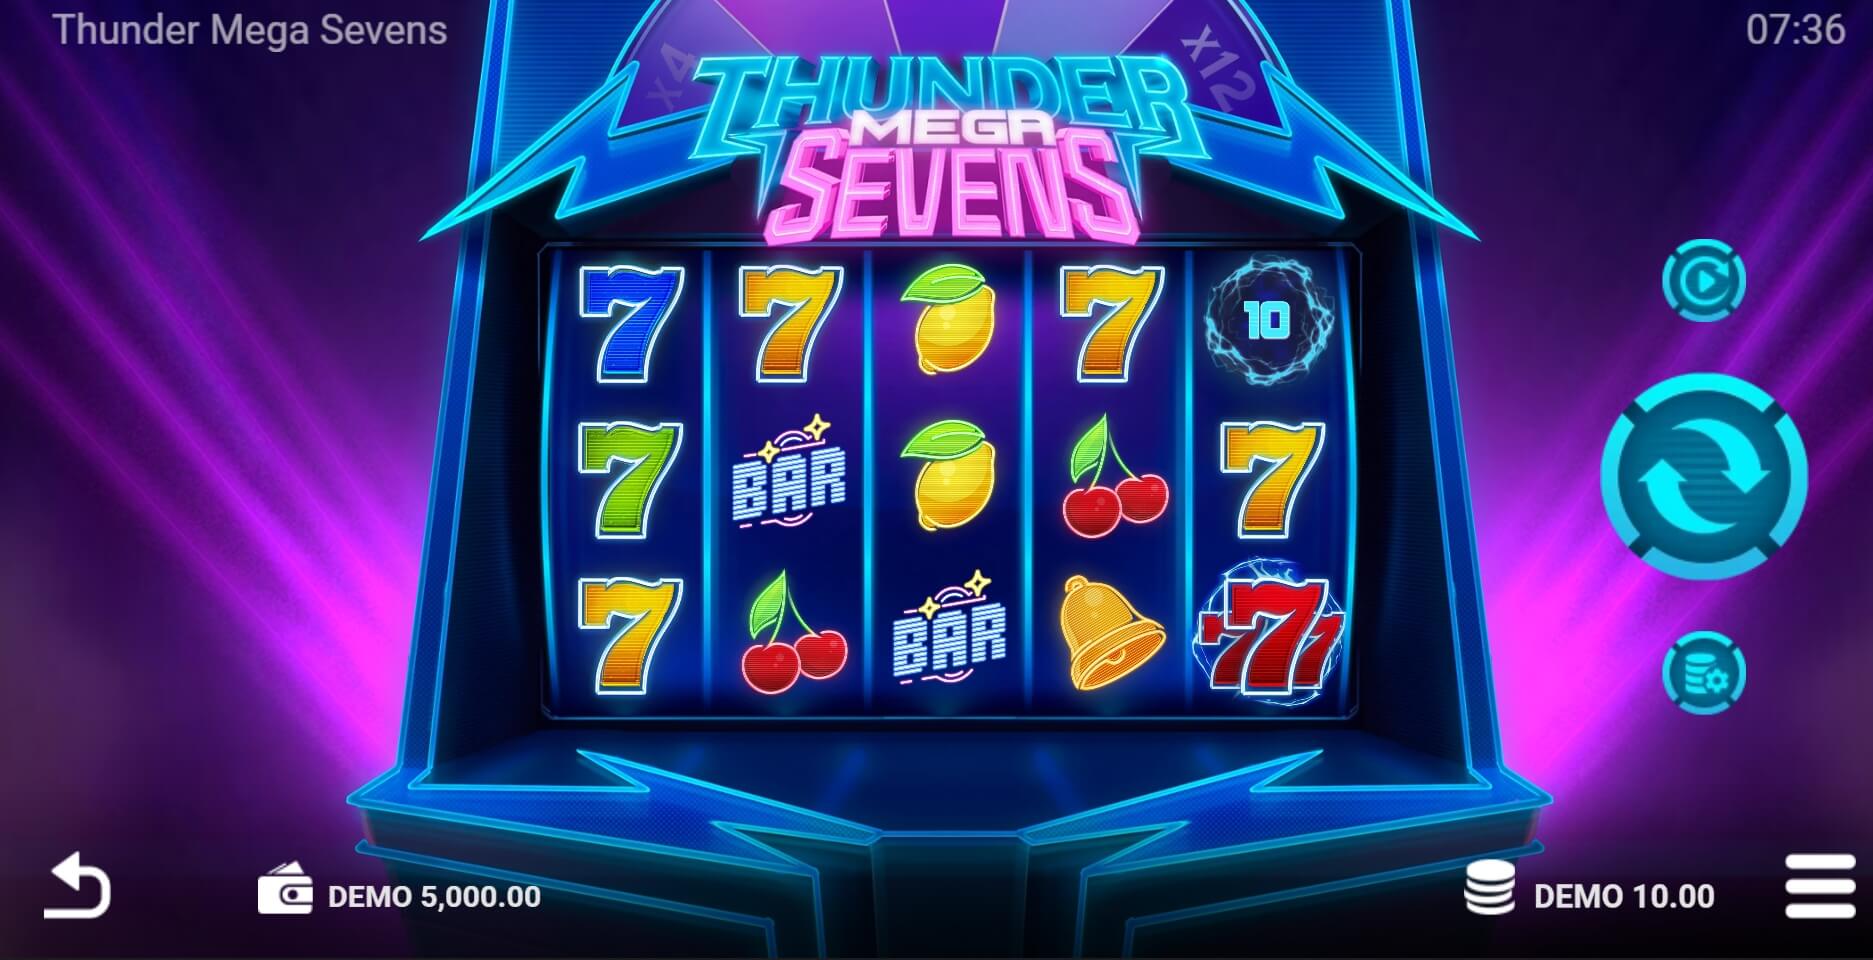 Thunder Mega Sevens Evoplay Superslot เครดิตฟรี